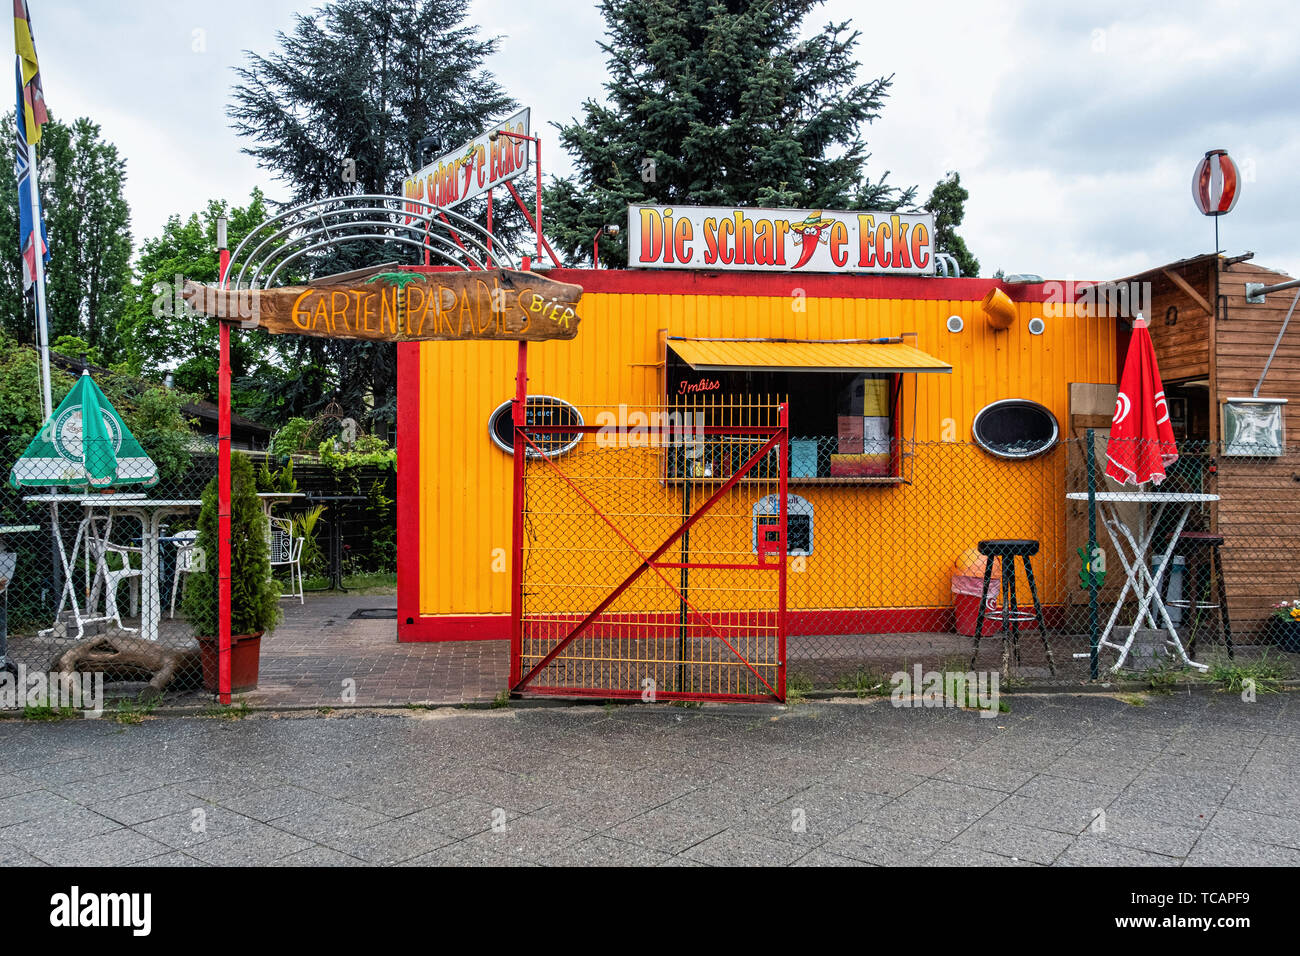 Die Scharfe Ecke Imbiss. Fast food & takeaway kiosk in Ruhleben-Berlin Stock Photo